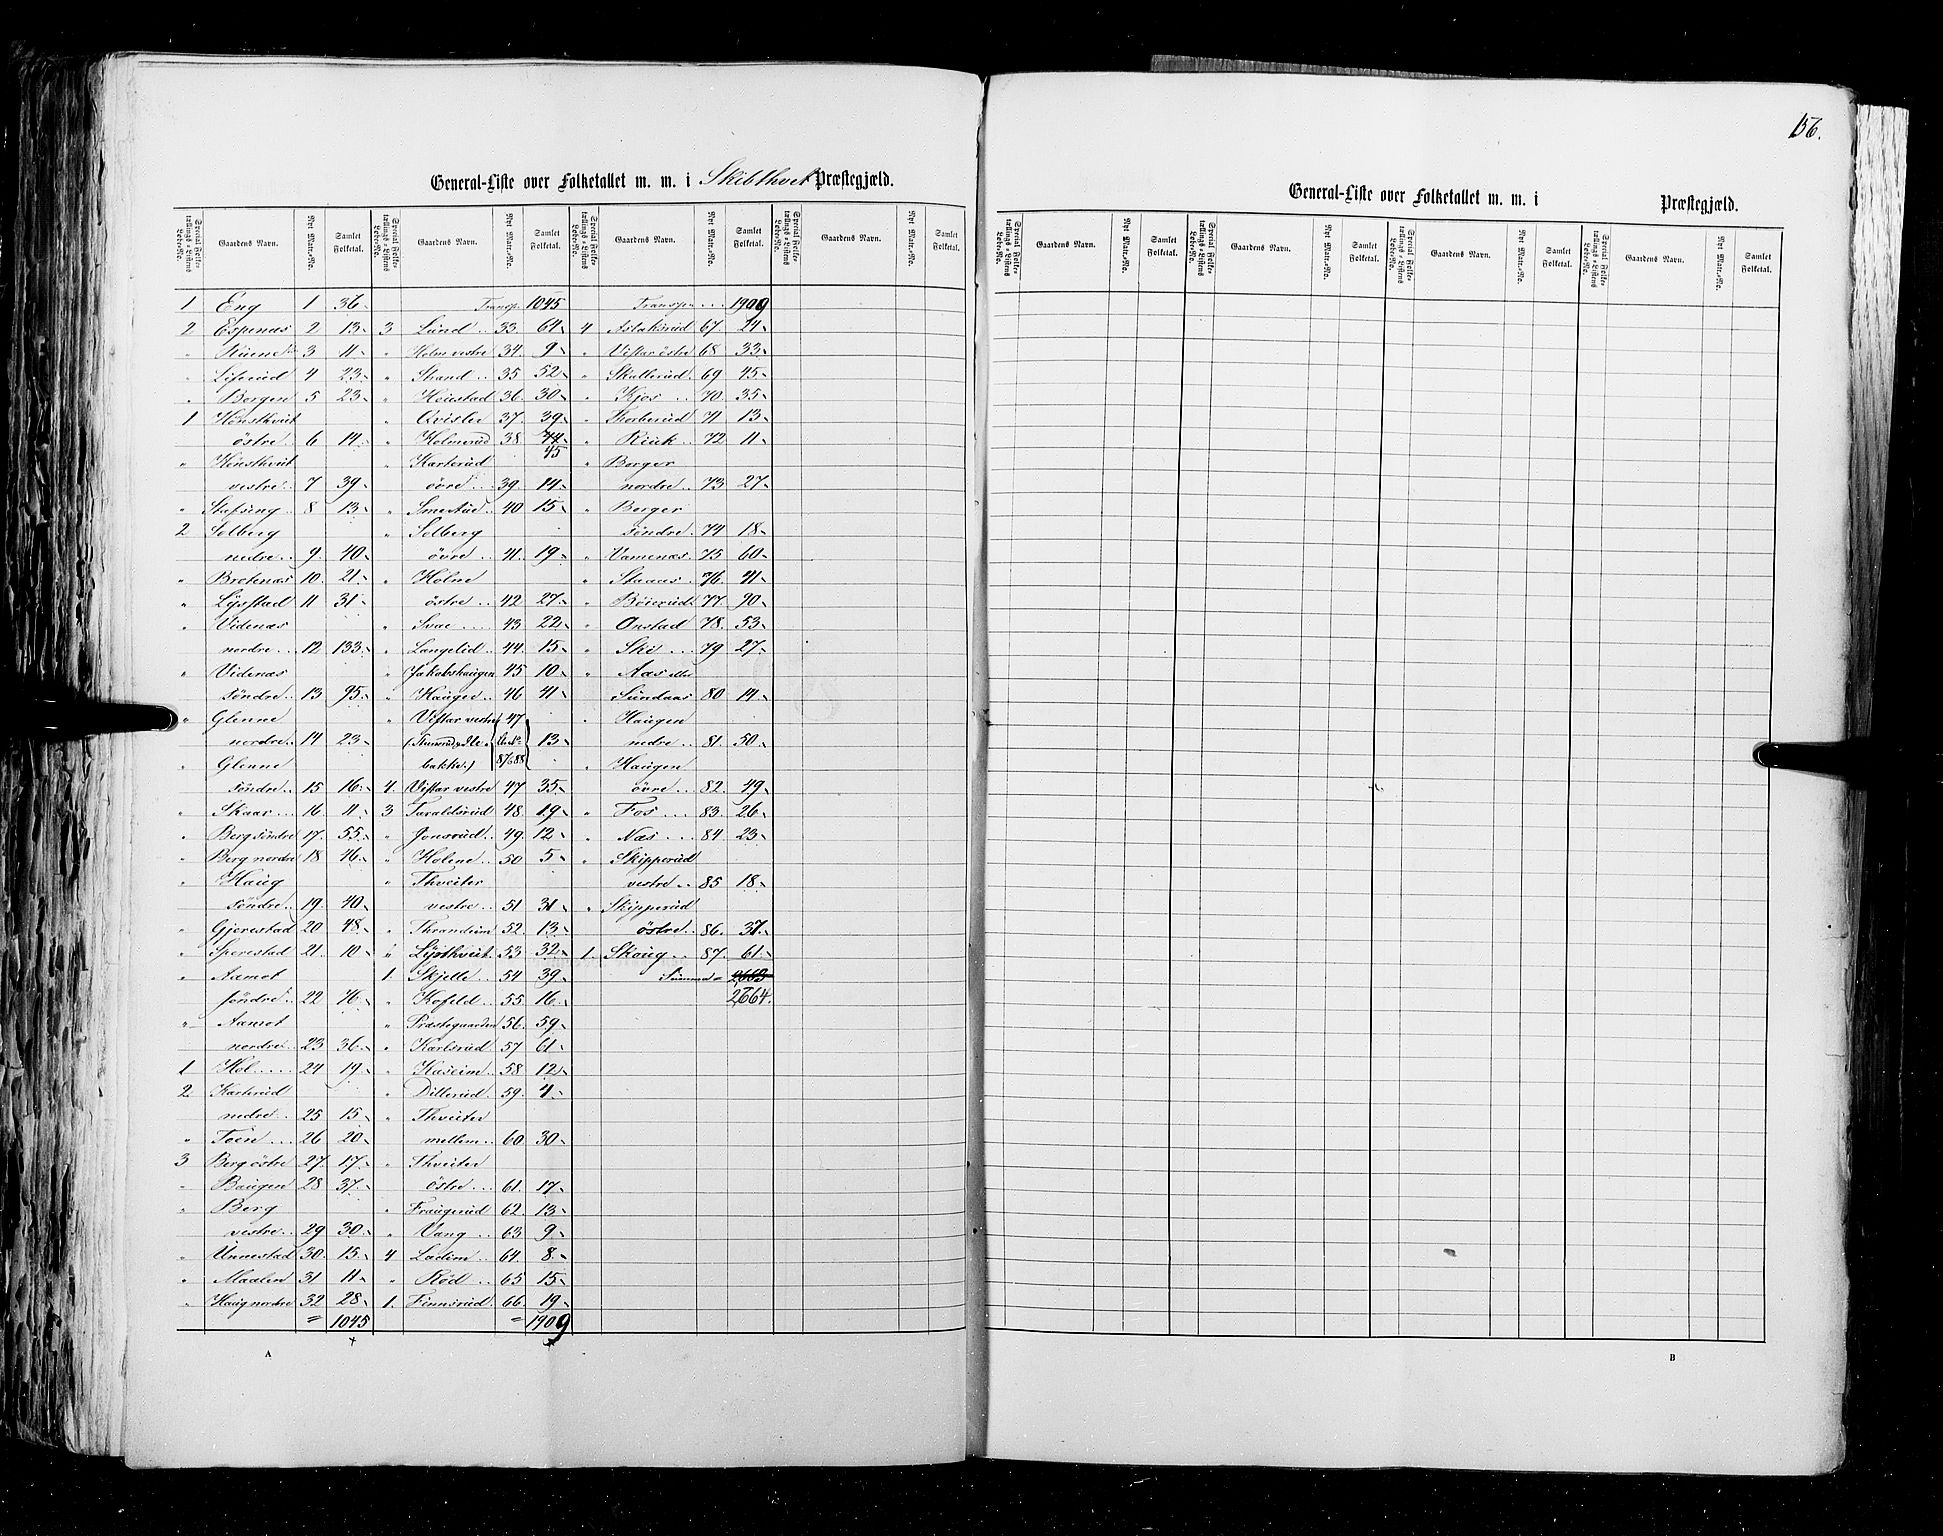 RA, Census 1855, vol. 1: Akershus amt, Smålenenes amt og Hedemarken amt, 1855, p. 156